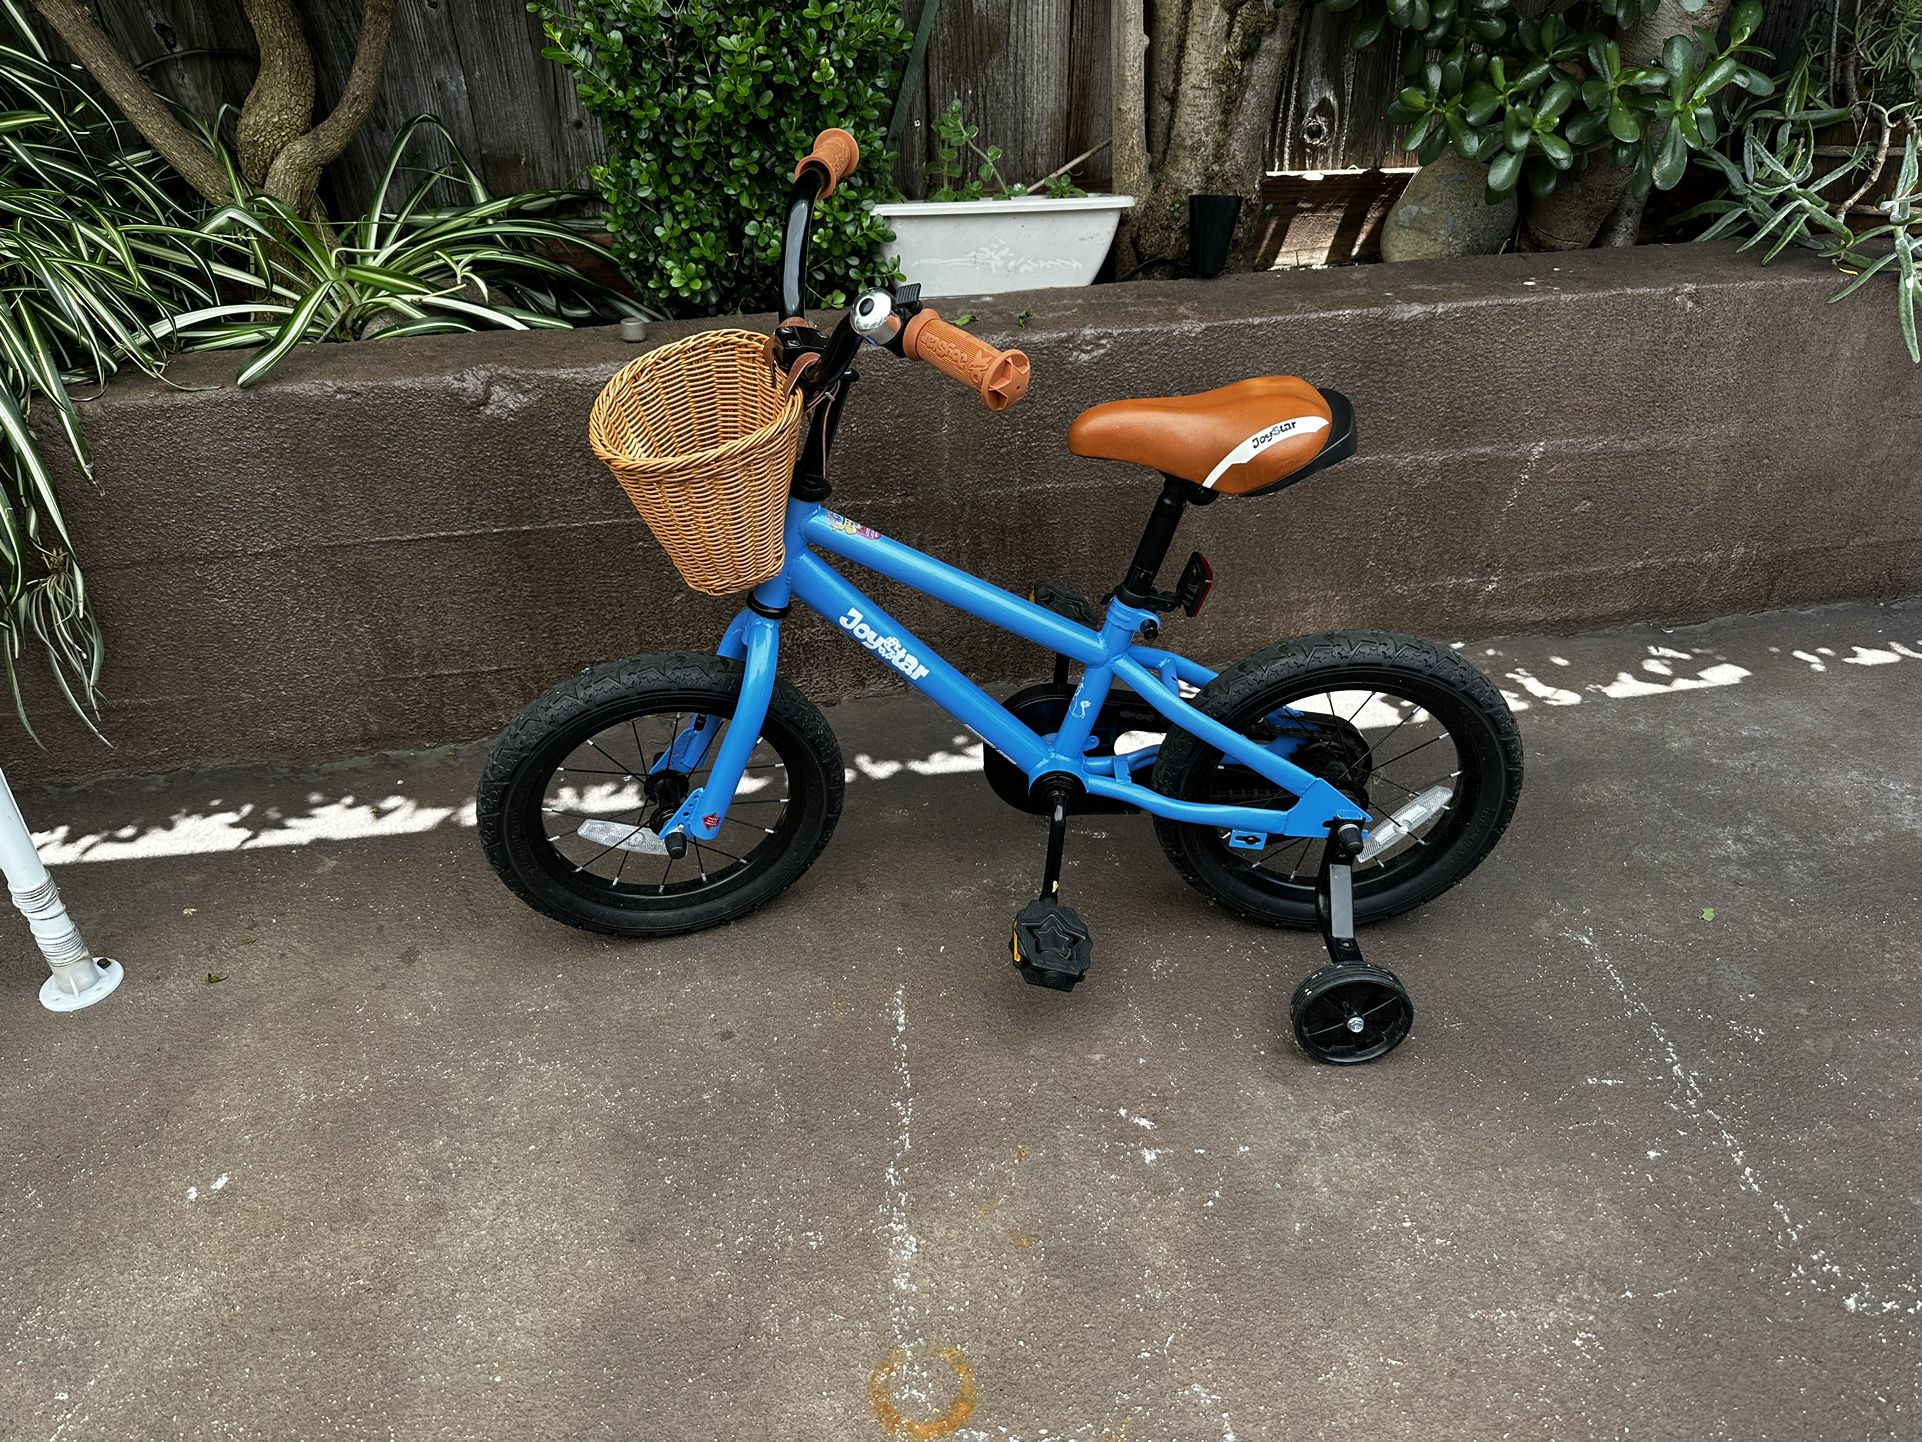 14 in Kids Joystar Bike In Blue With Helmet 